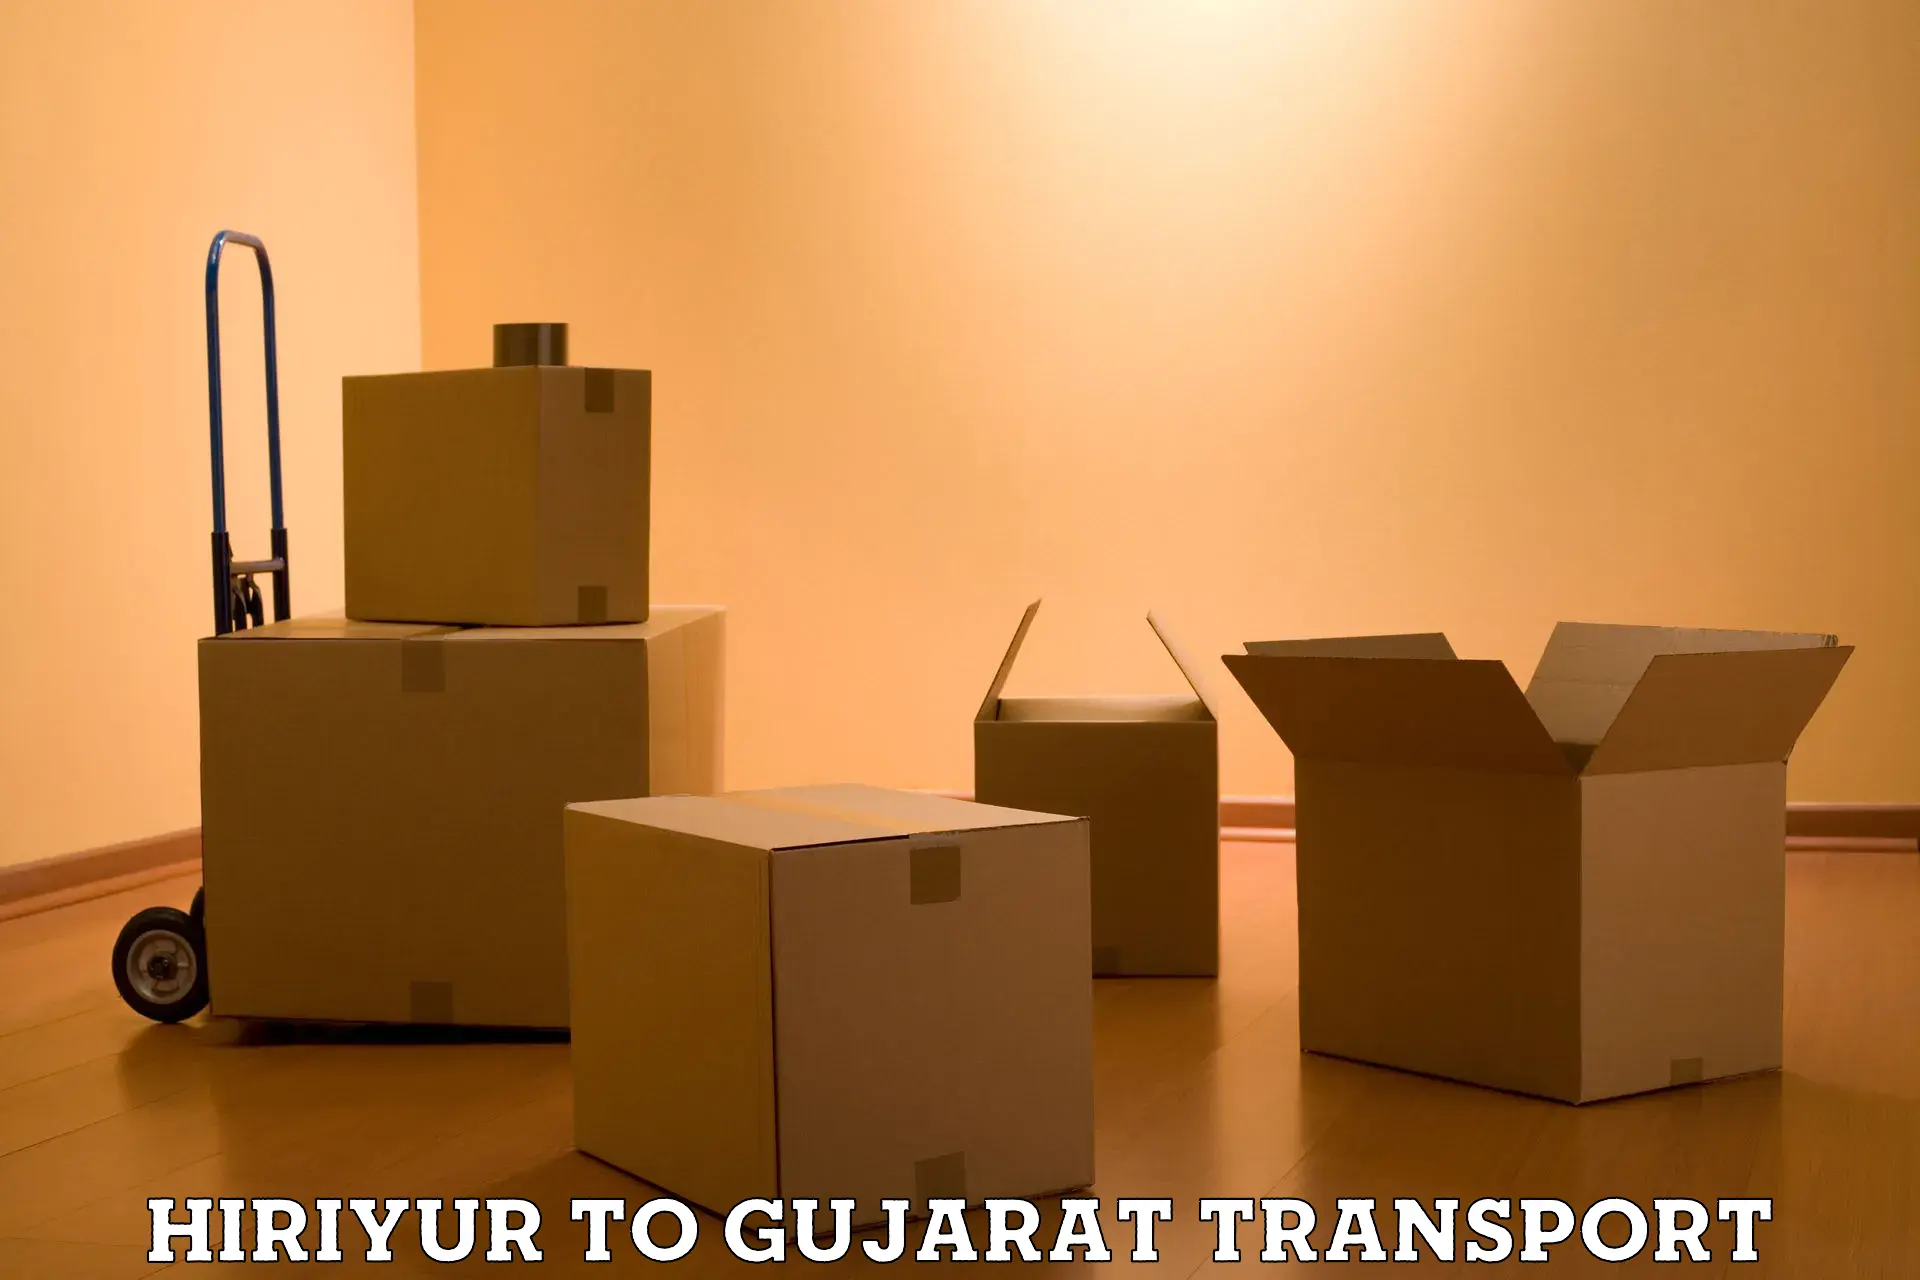 Goods delivery service Hiriyur to IIIT Surat